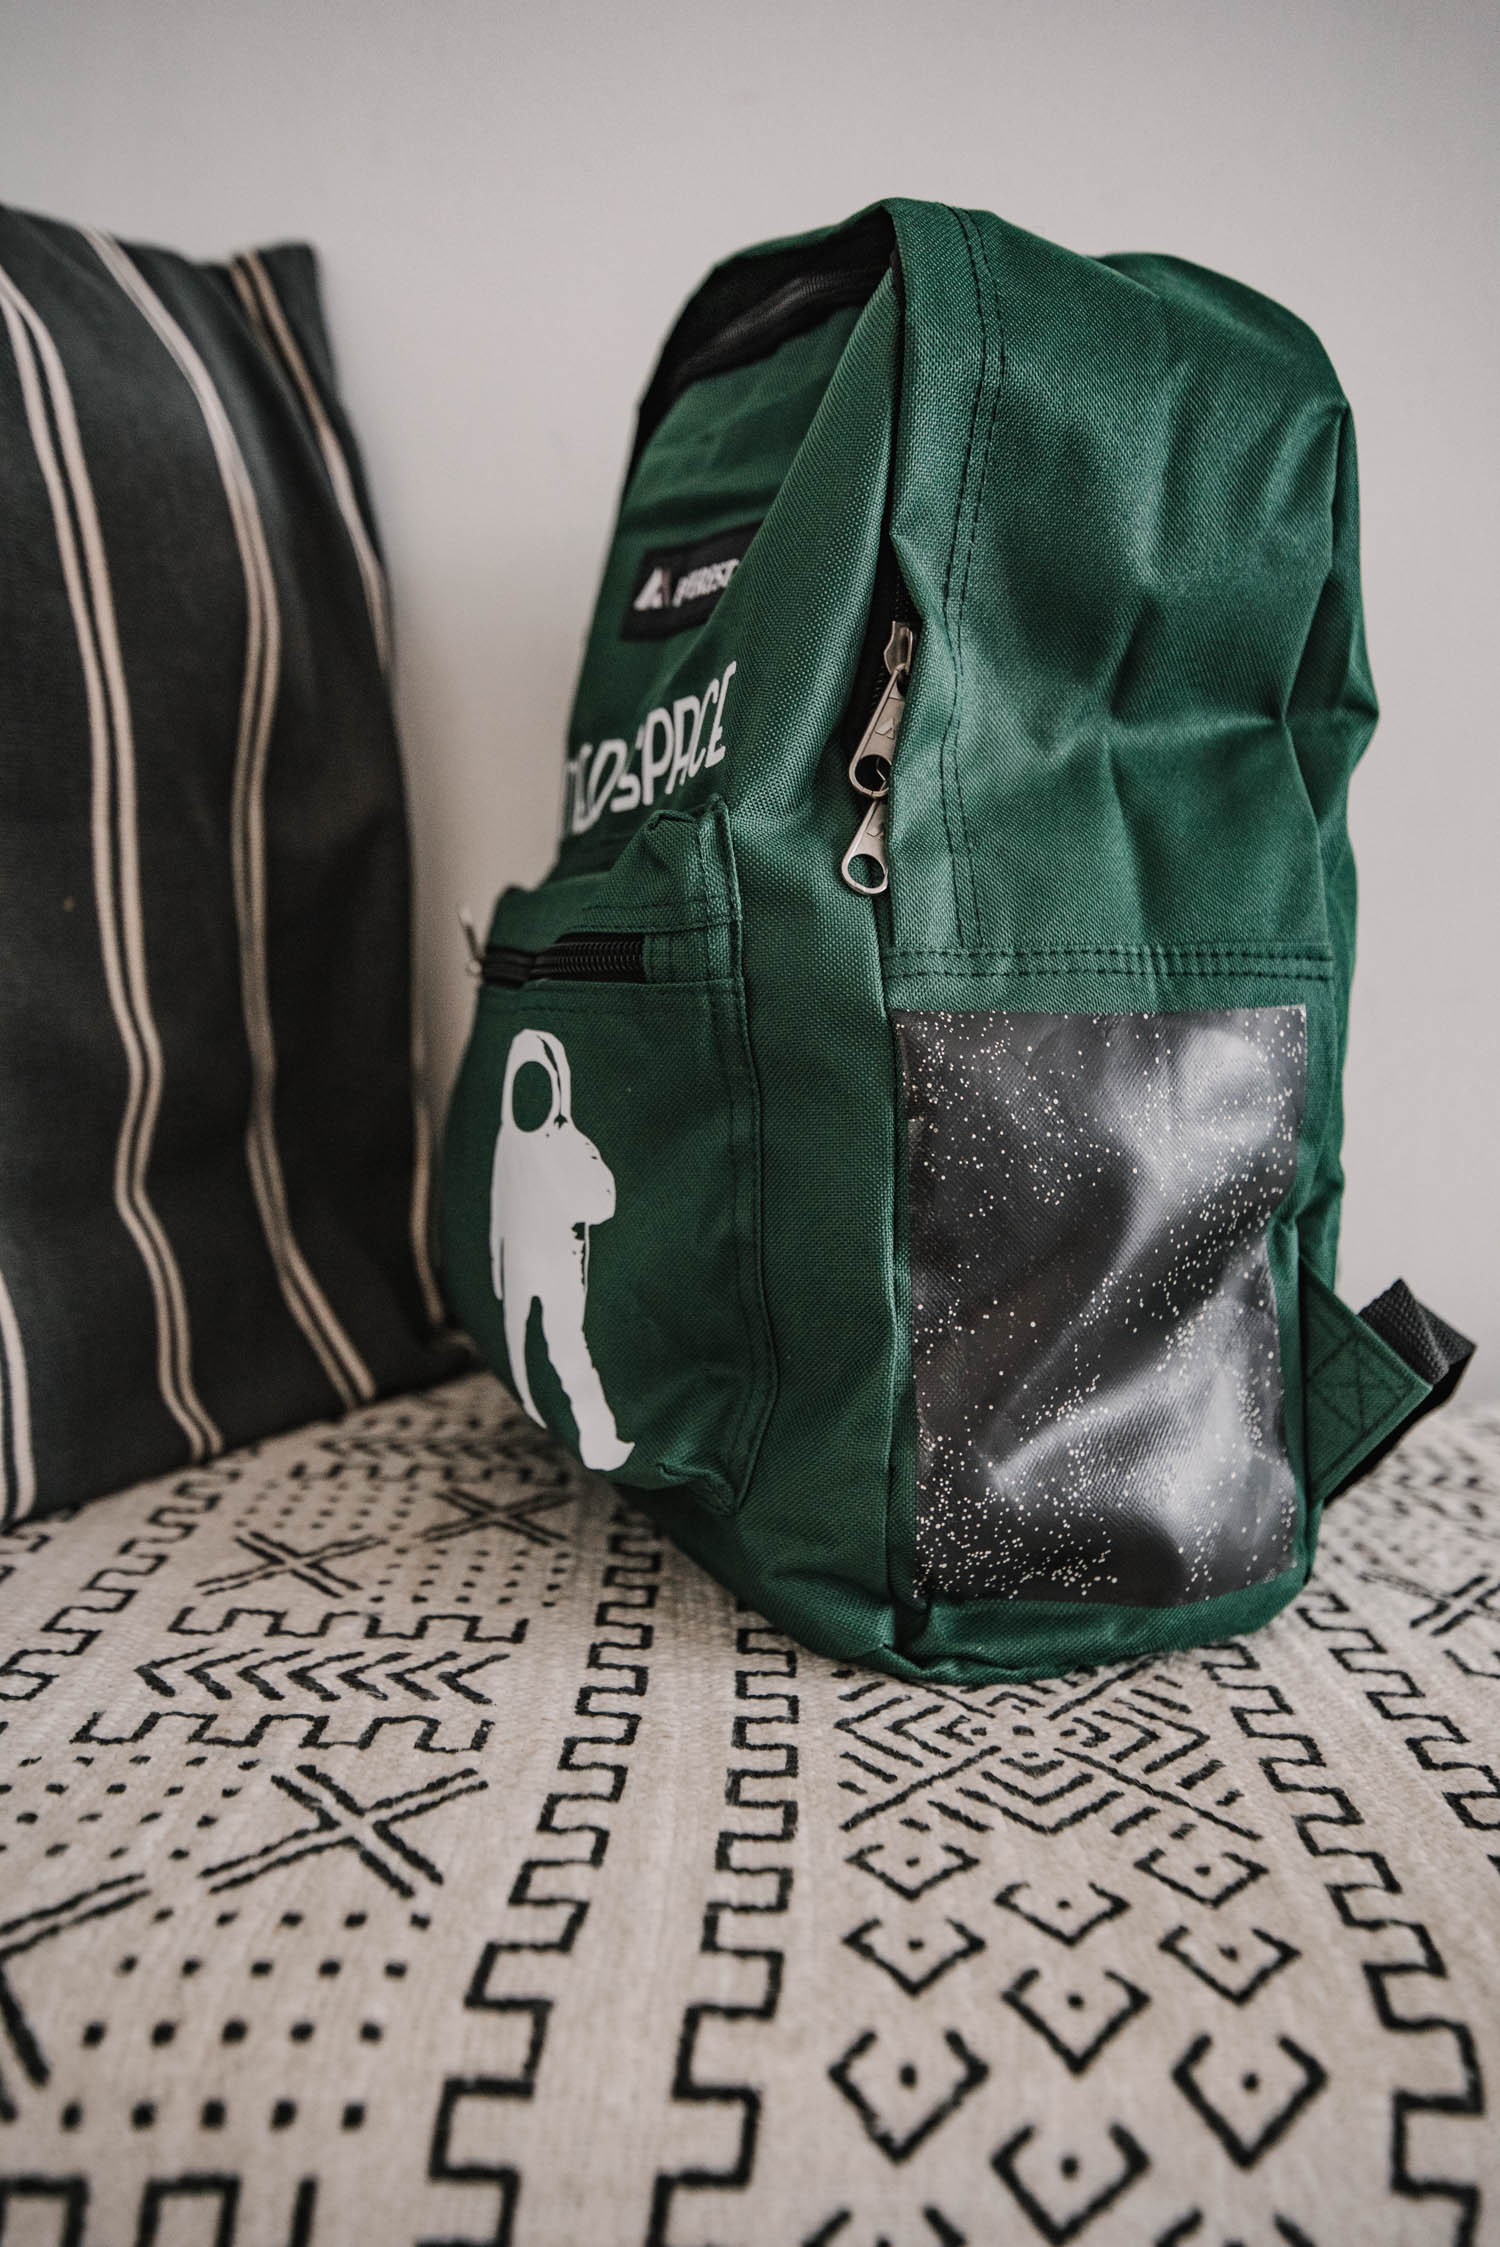 Patterned iron on vinyl for backpacks